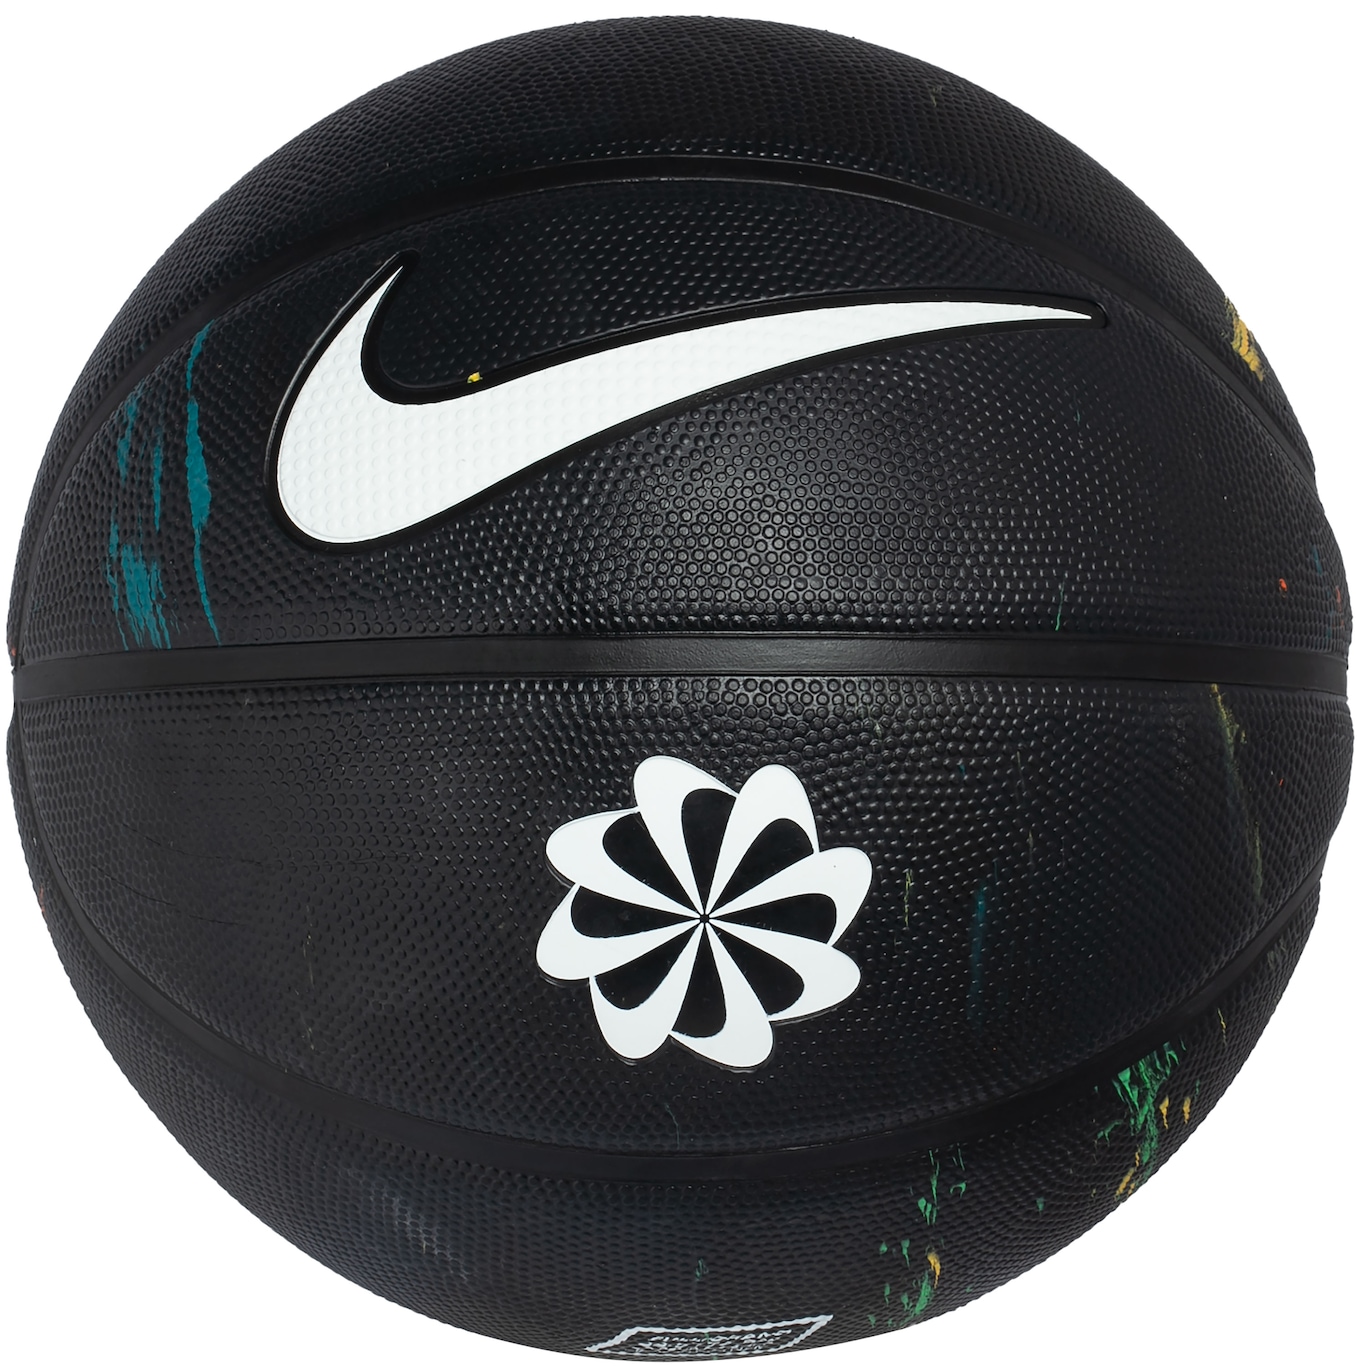 Bola Basquete Nike - Loja de Artigos Esportivos Online